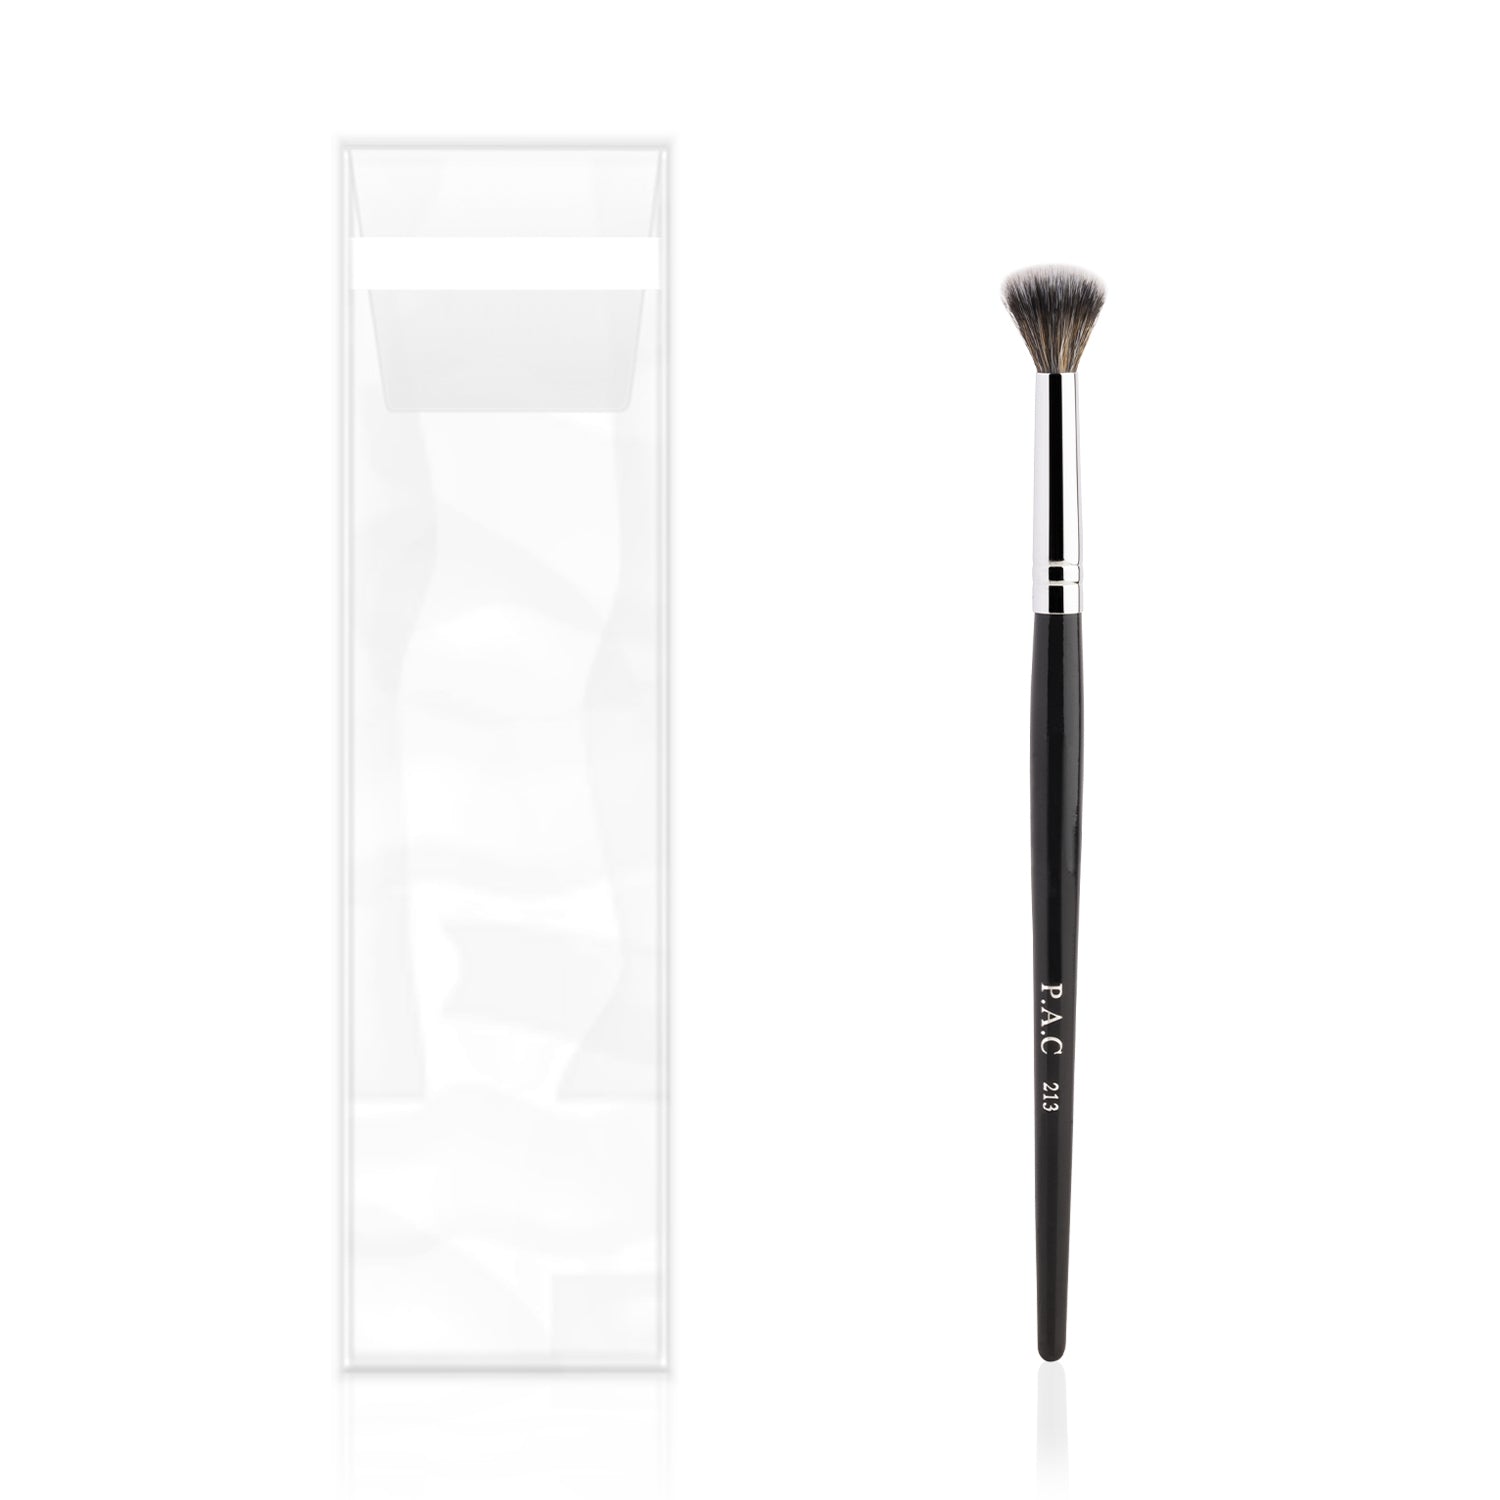 PAC Cosmetics Eyeshadow Blending Brush 213